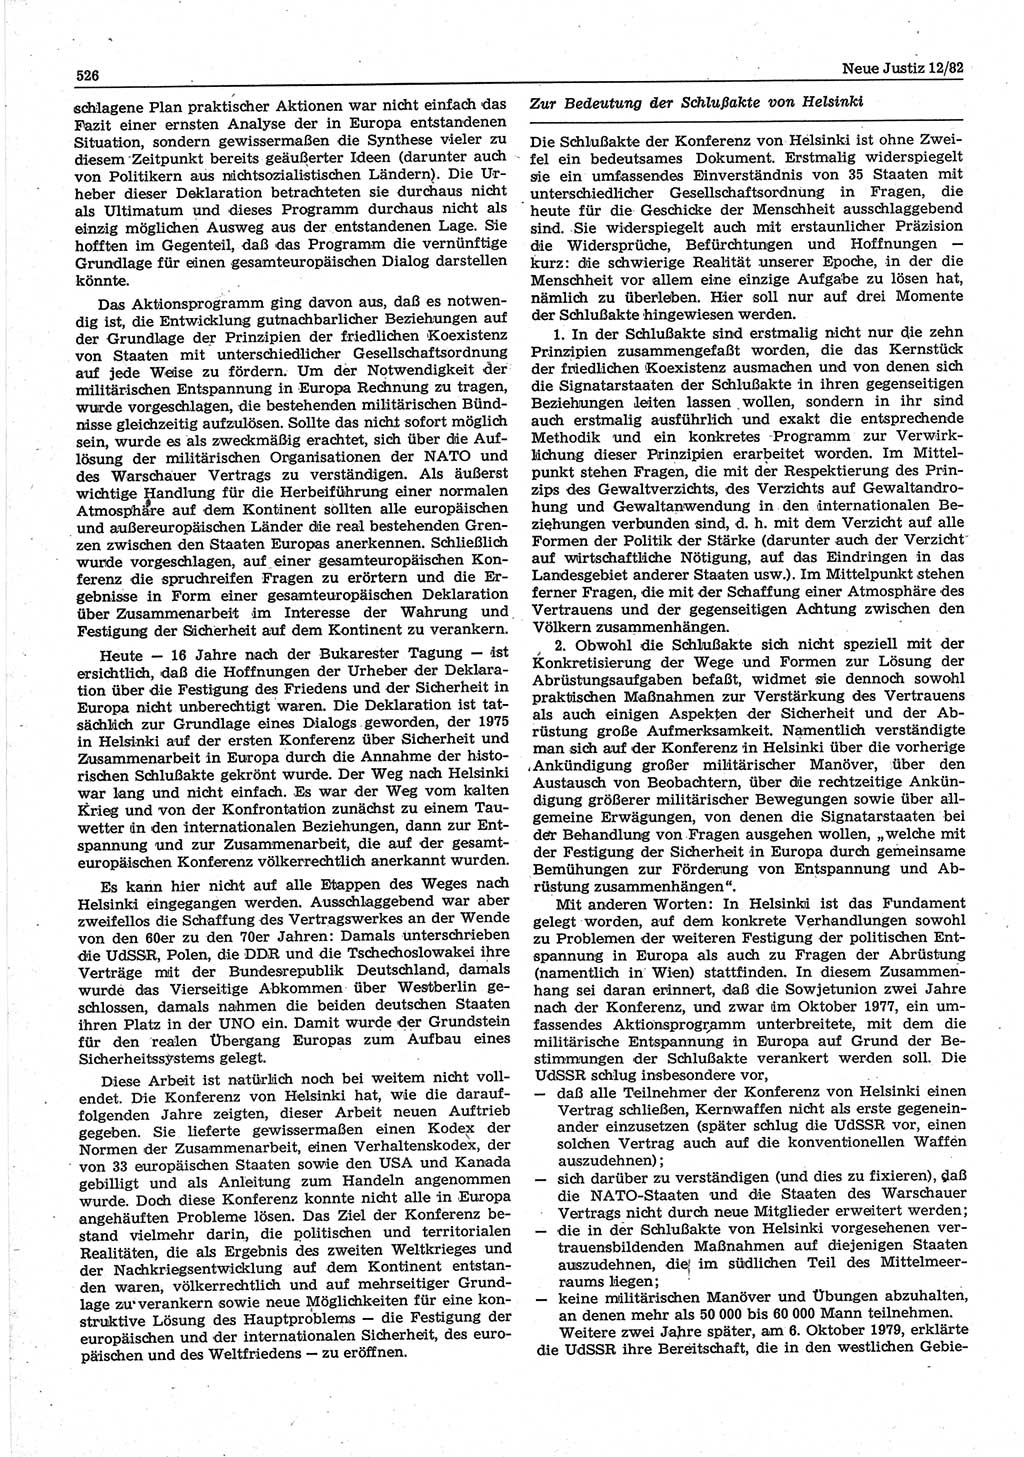 Neue Justiz (NJ), Zeitschrift für sozialistisches Recht und Gesetzlichkeit [Deutsche Demokratische Republik (DDR)], 36. Jahrgang 1982, Seite 526 (NJ DDR 1982, S. 526)